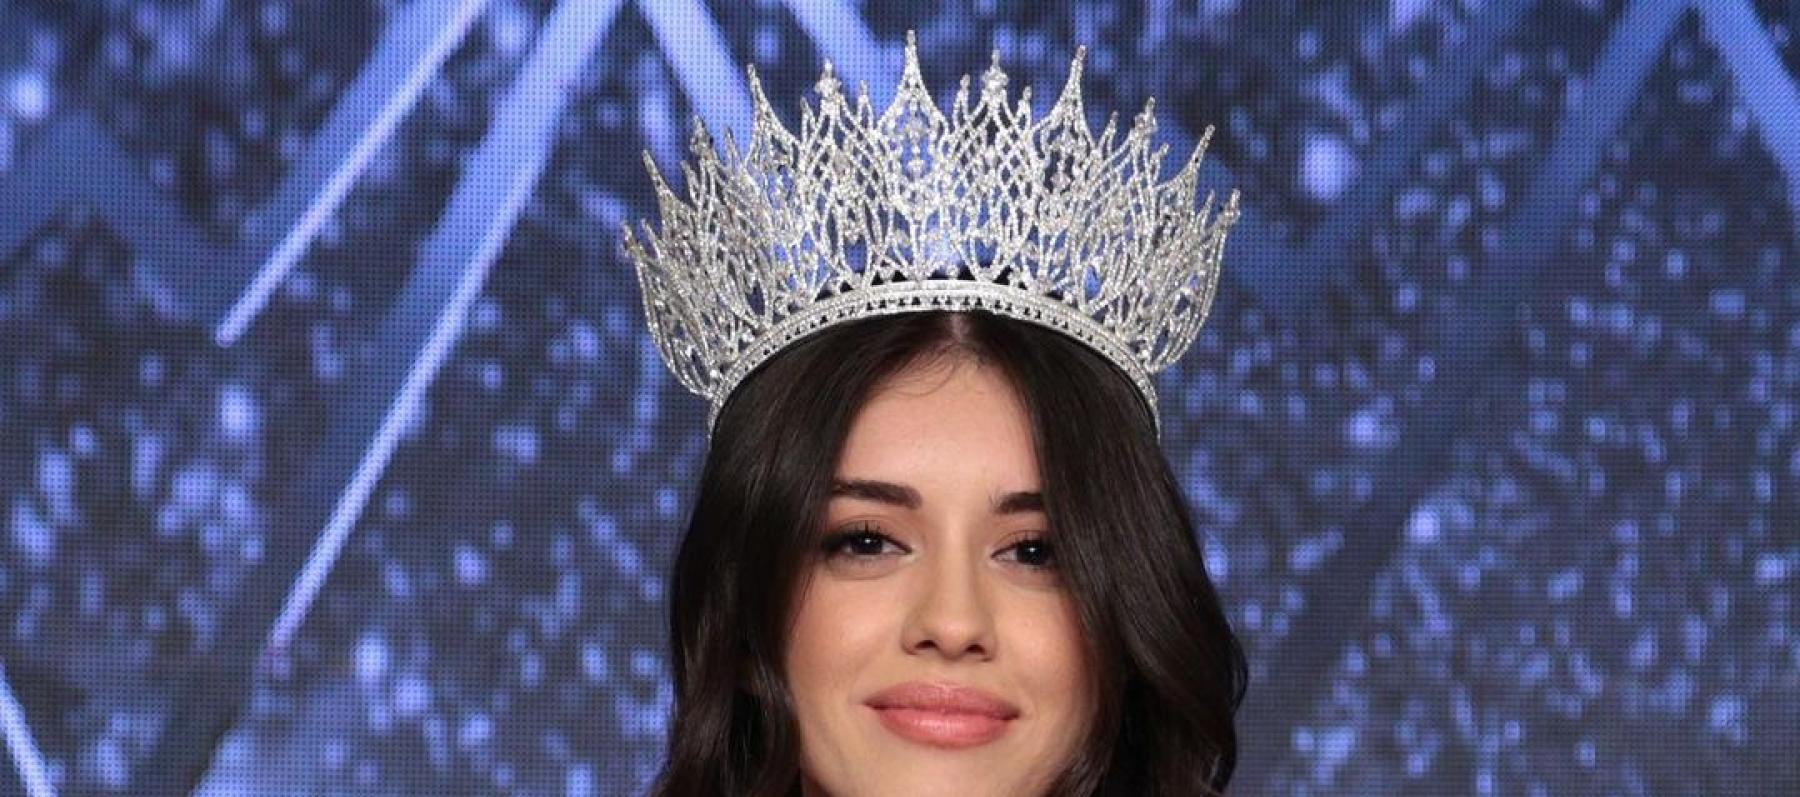 نورسينا ساي - صورة من حساب Miss Turkey Official على انستقرام